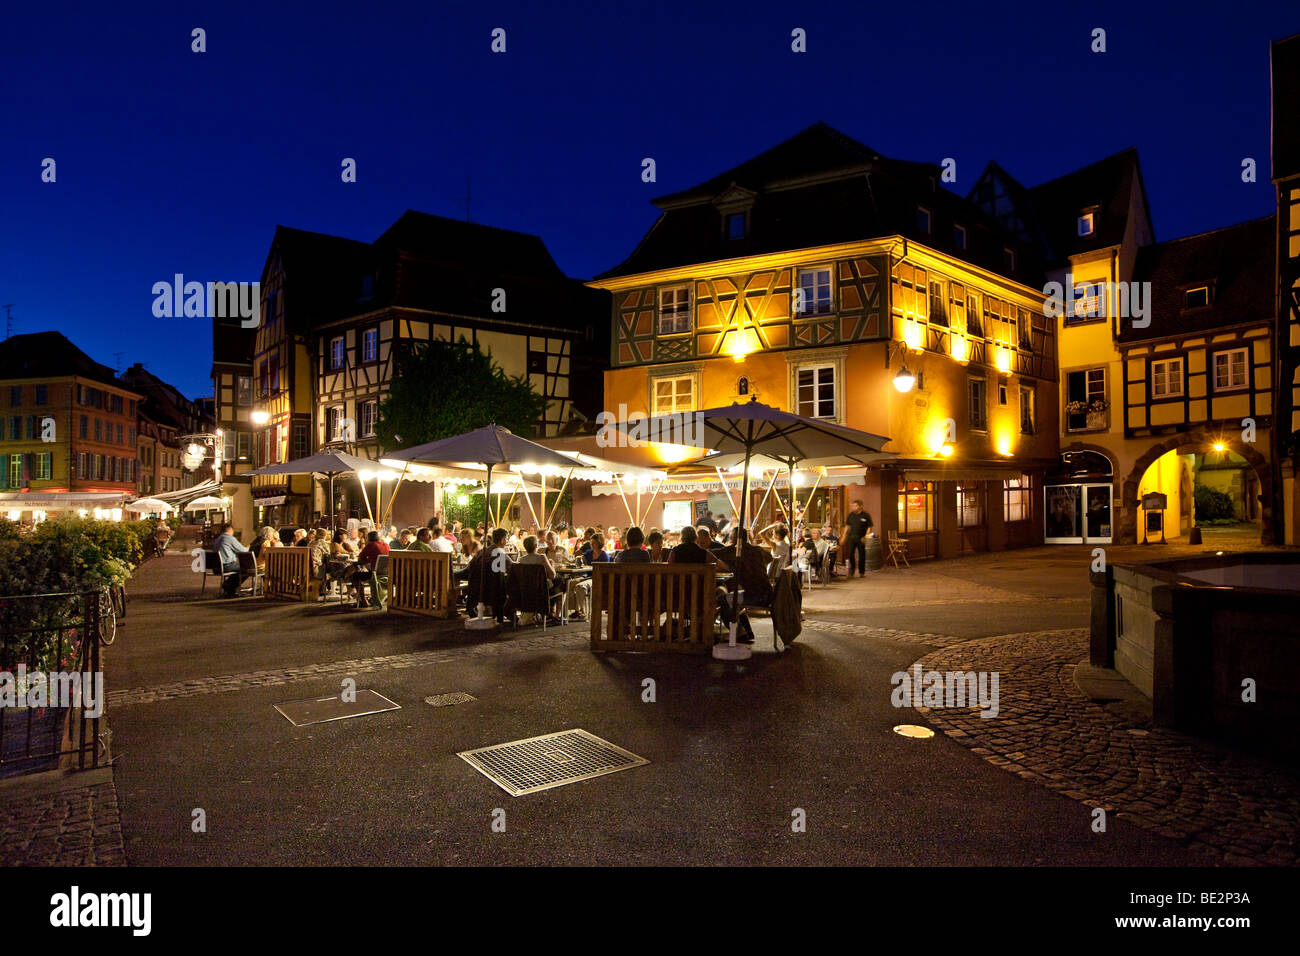 Historic centre, Place de l'Ancienne Douane - Colmar, Colmar, Alsace, France, Europe Stock Photo